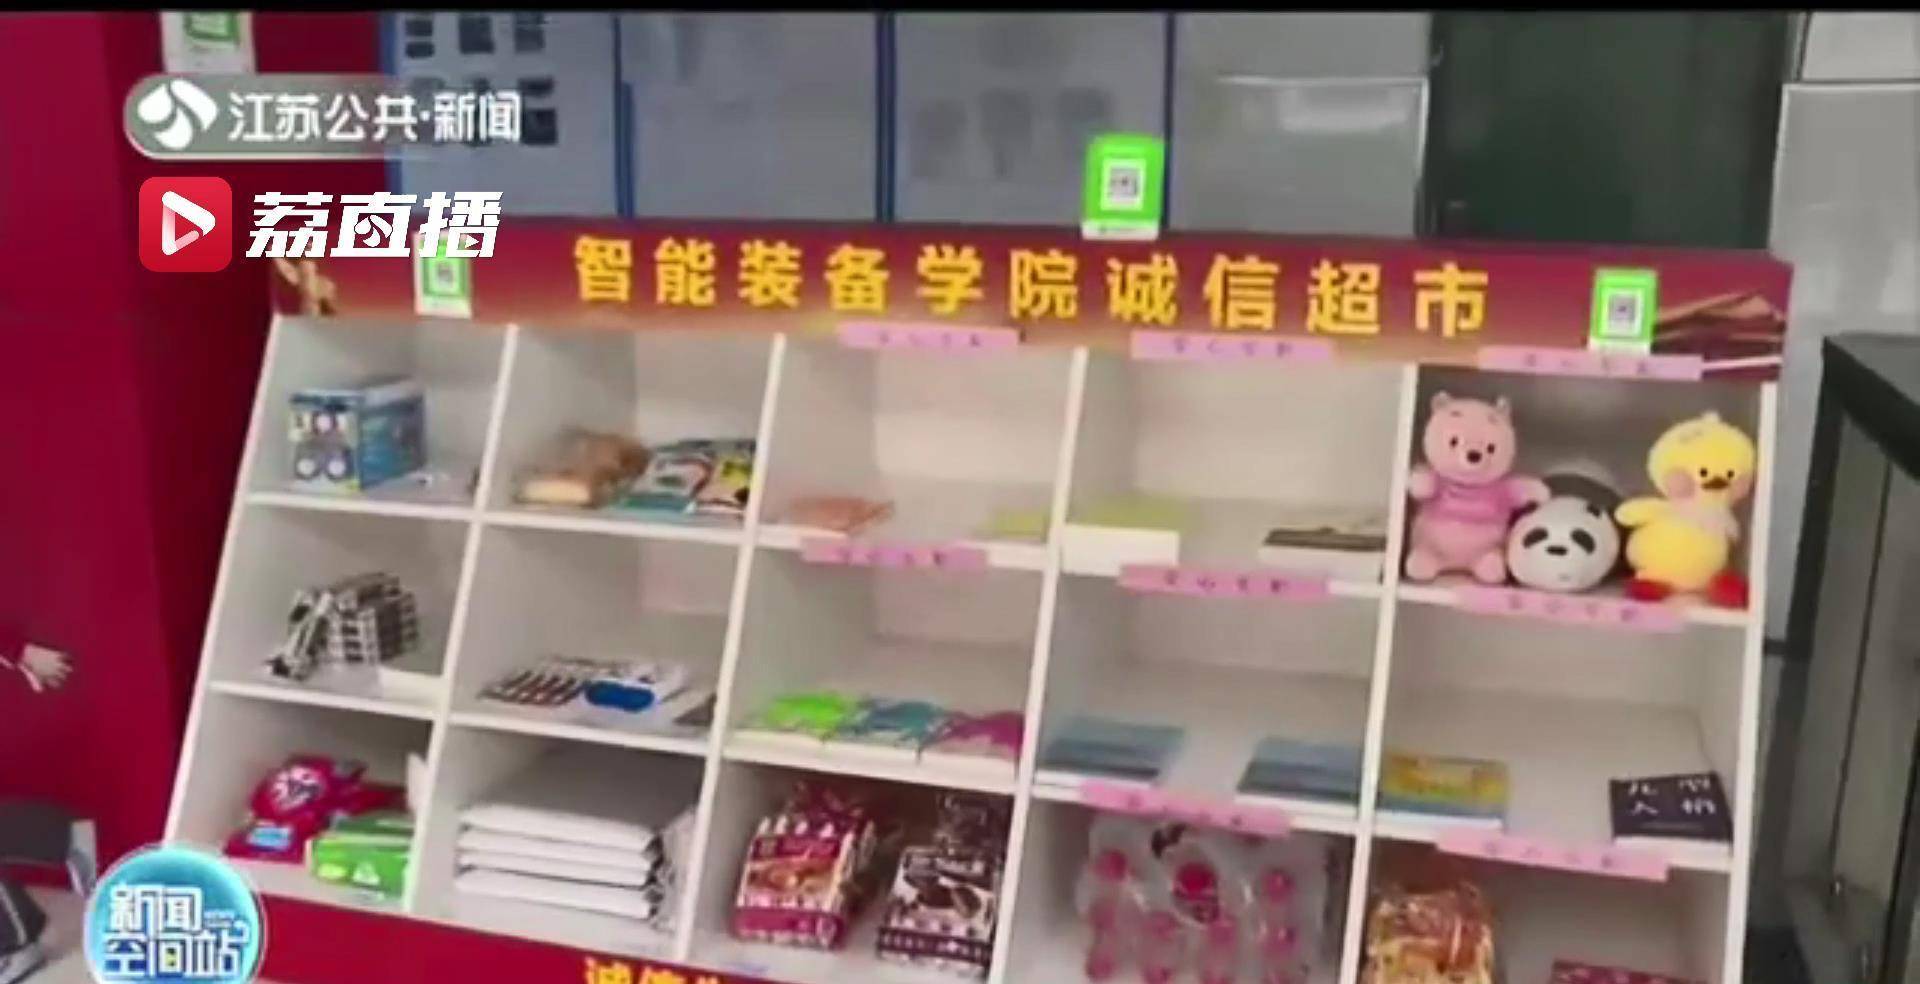 诚信超市的货架摆放于学生公寓楼一楼,不时有学生前来自主挑选商品